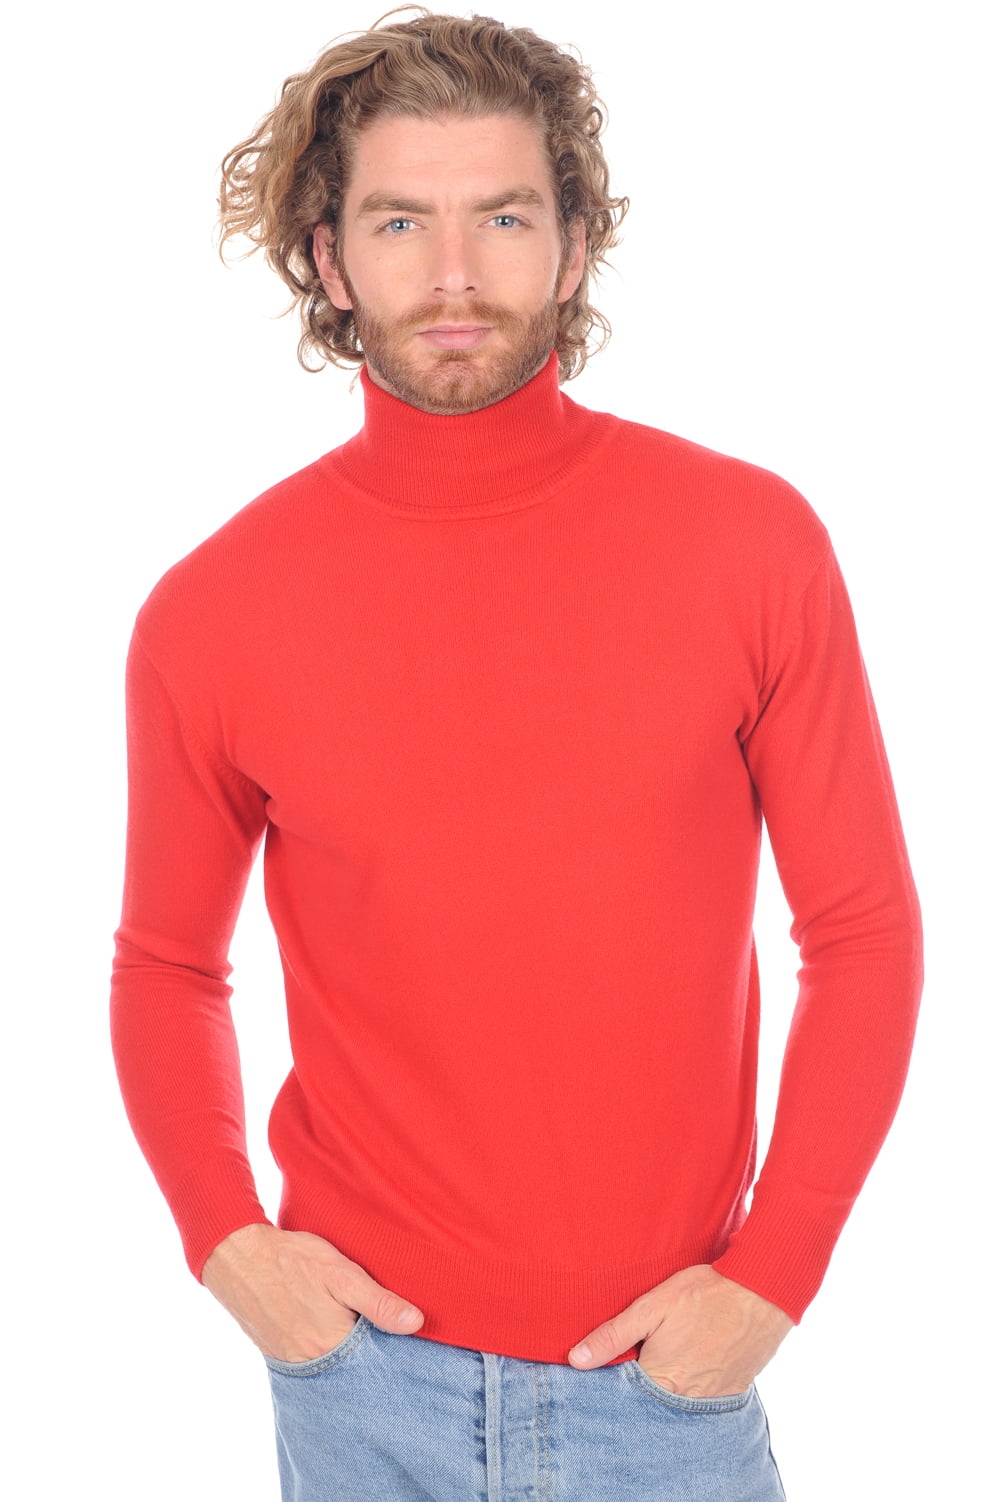 Cashmere men premium sweaters edgar premium tango red 3xl